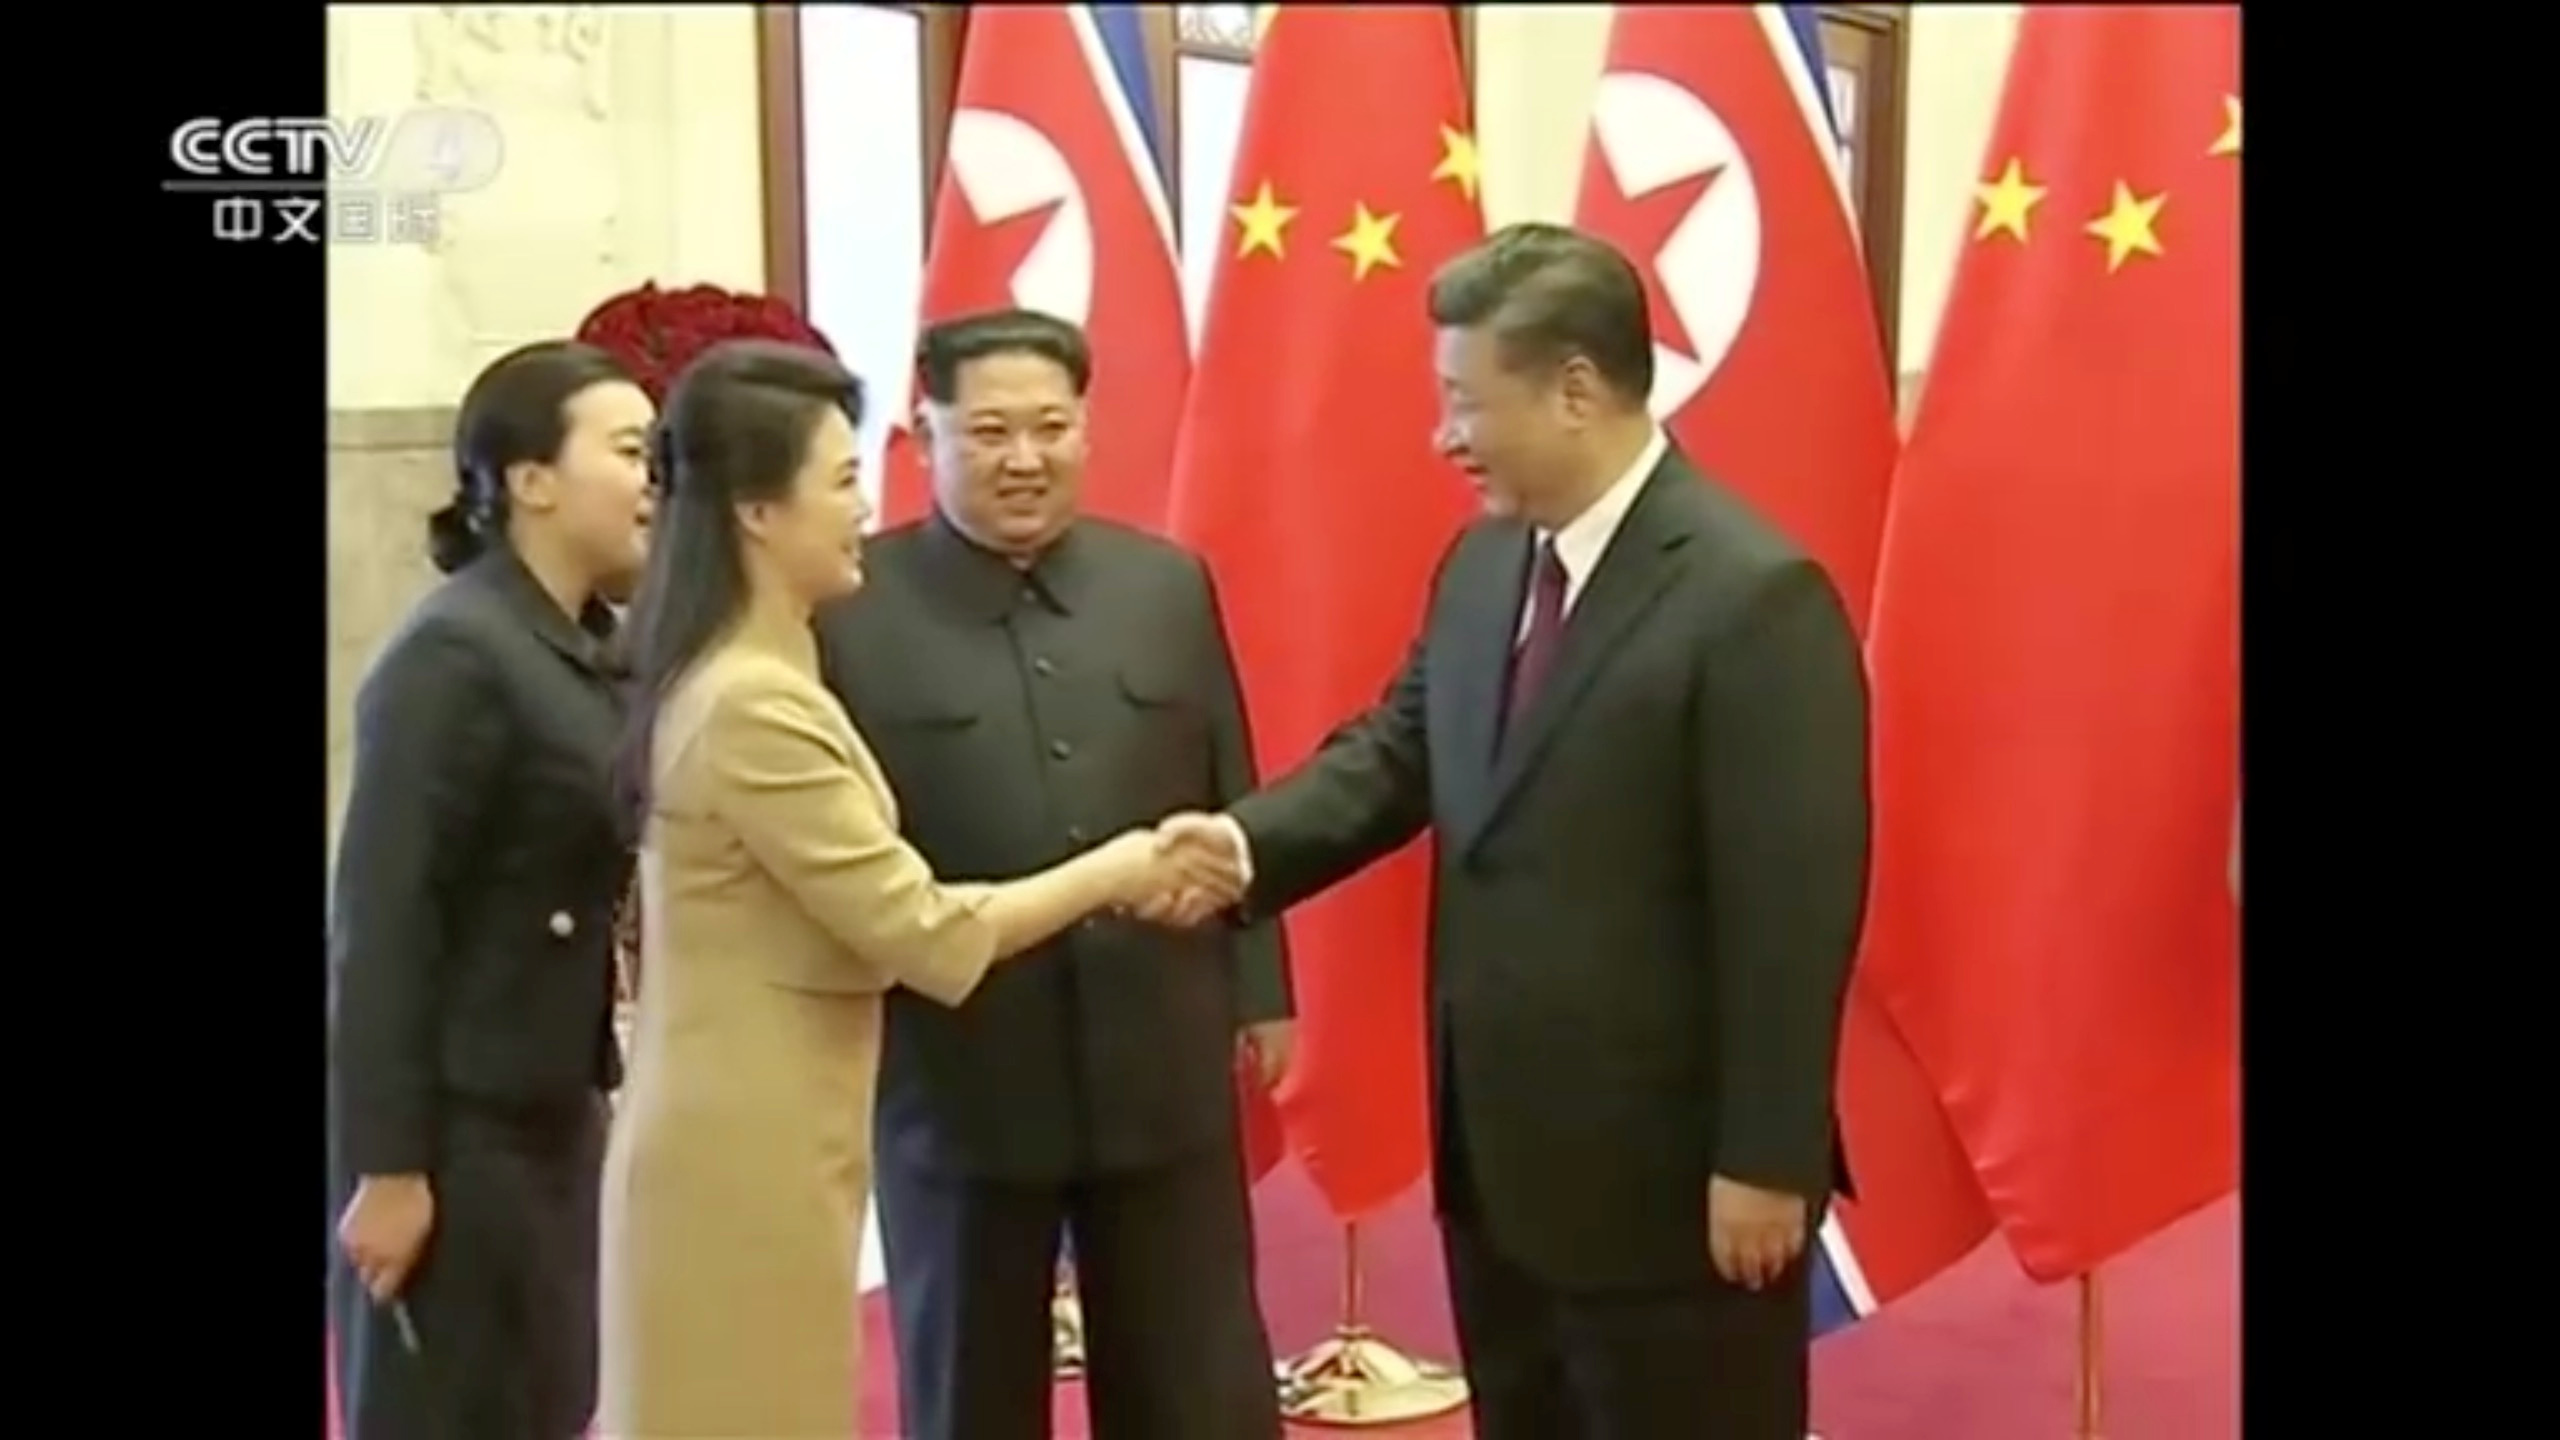 زوجة زعيم كوريا تصافح الرئيس الصيني